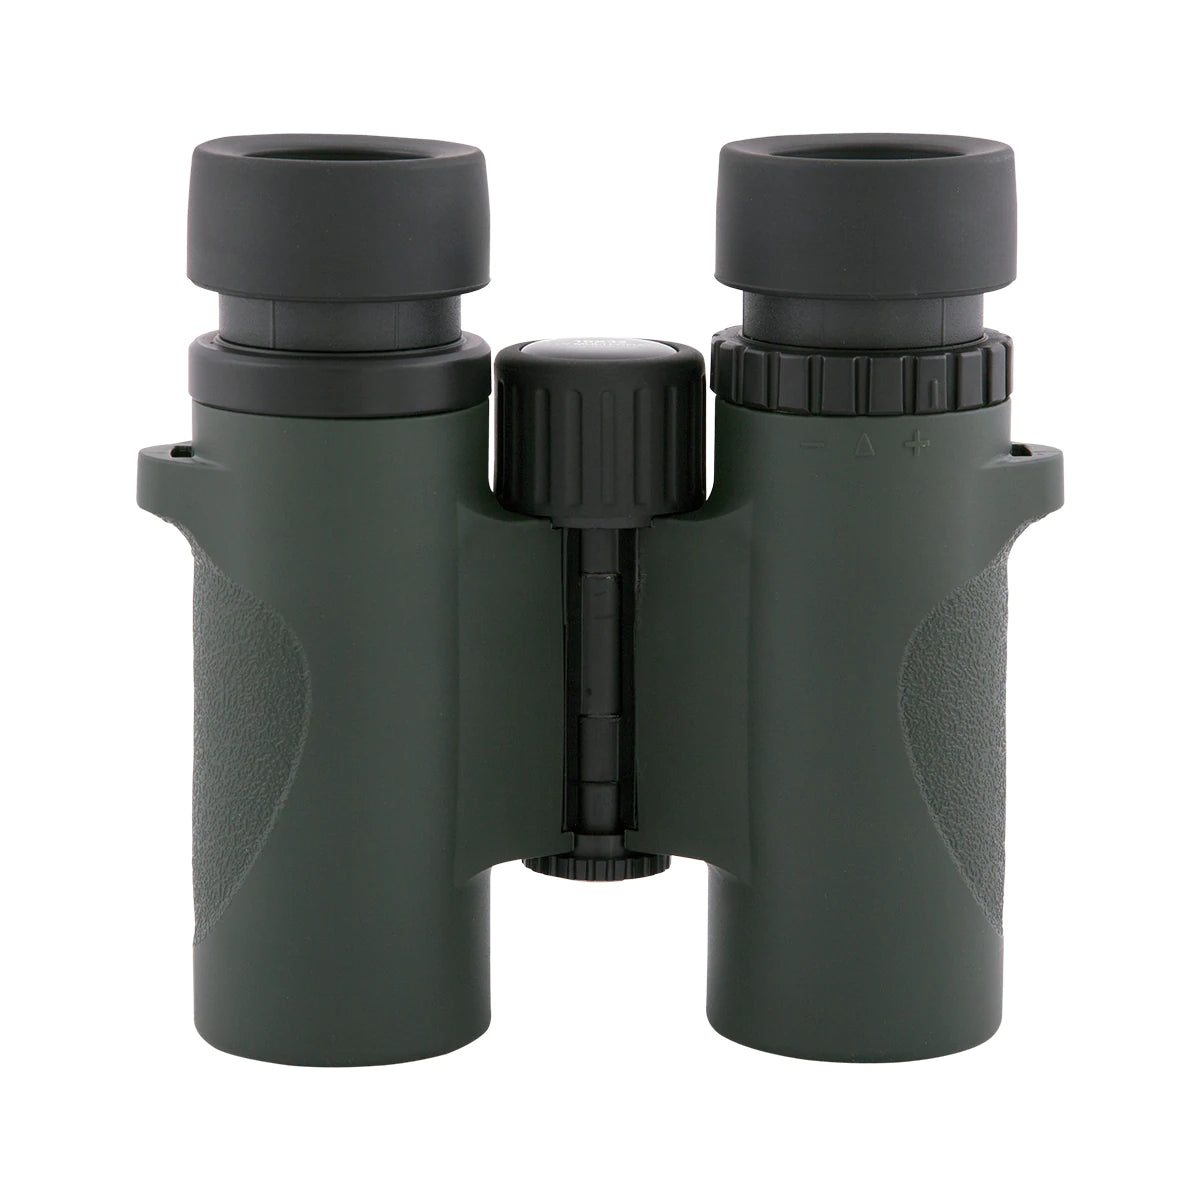 Condor 10x32mm Waterproof Travel Size Binoculars-18-21032 - CoreScientifics- Hobby Optics